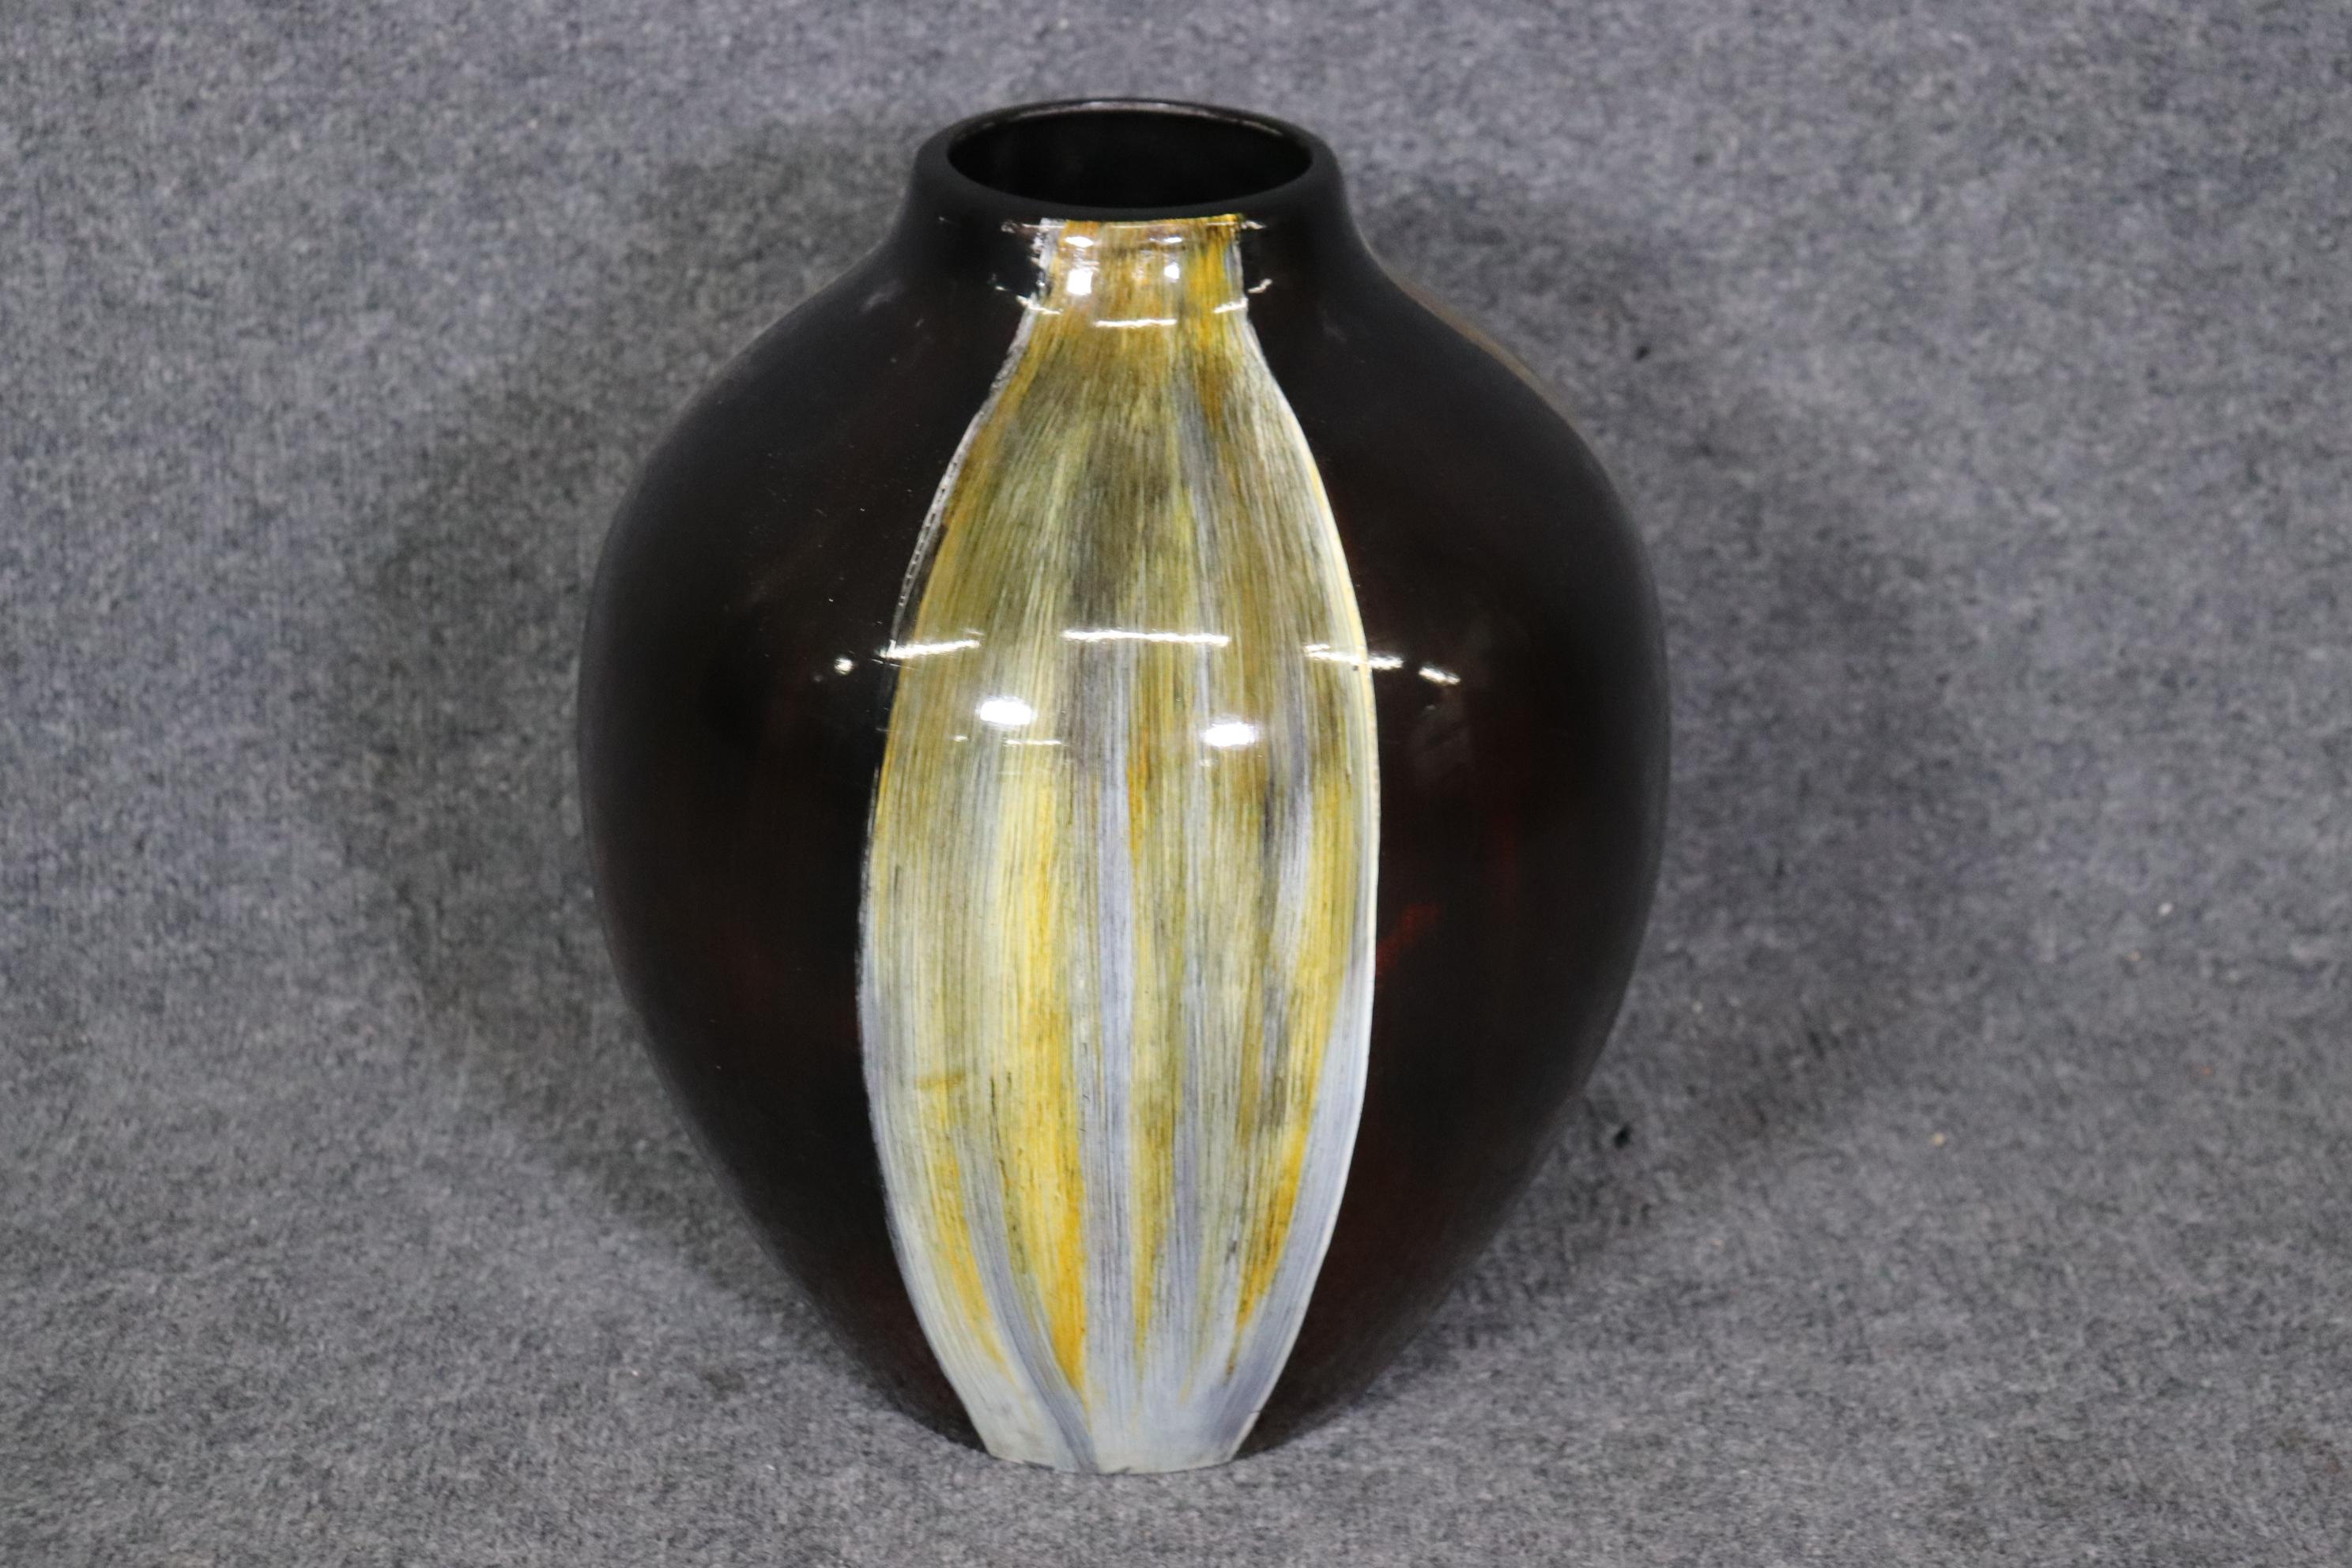 Abmessungen: Höhe: 14 Zoll Breite: 10 3/4 Zoll Tiefe: 10 3/4 Zoll 

Diese Vintage Mid Century Modern Keramik Kunst Vase ist von höchster Qualität hergestellt. Wenn Sie sich die bereitgestellten Fotos ansehen, werden Sie die Liebe zum Detail in der